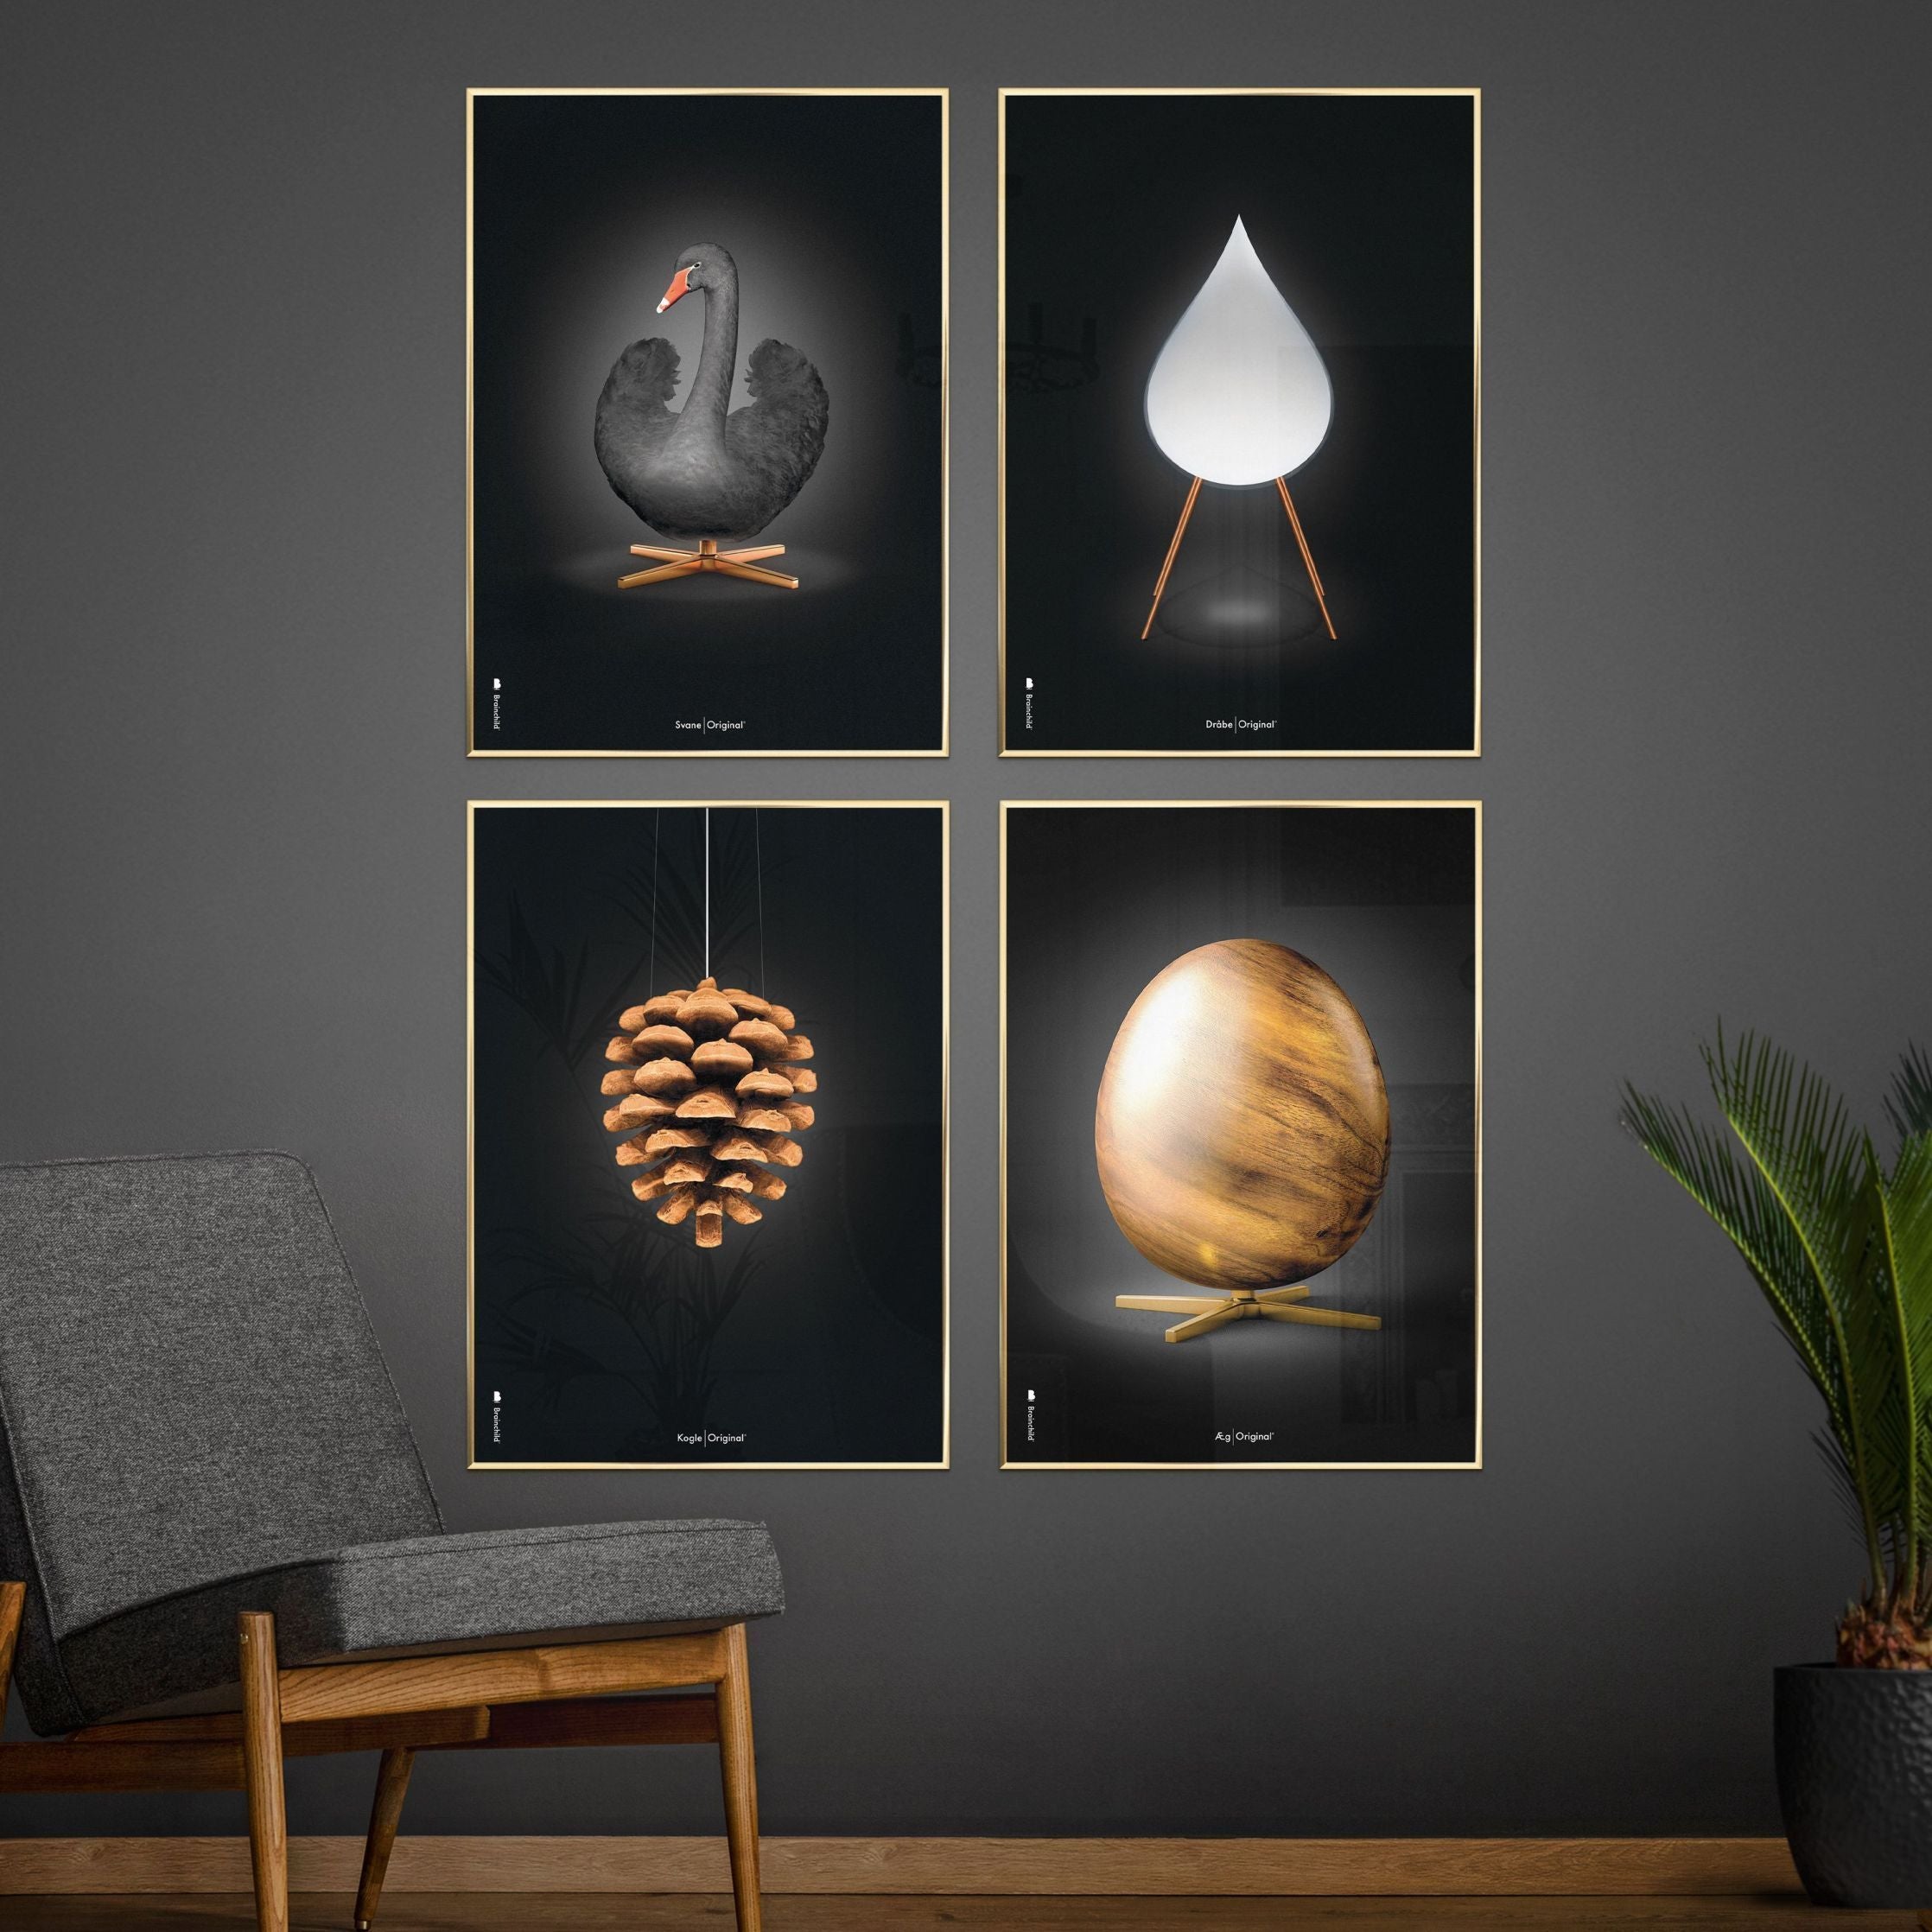 Brainchild Egg Figures Poster, Frame Made Of Dark Wood 50x70 Cm, Black